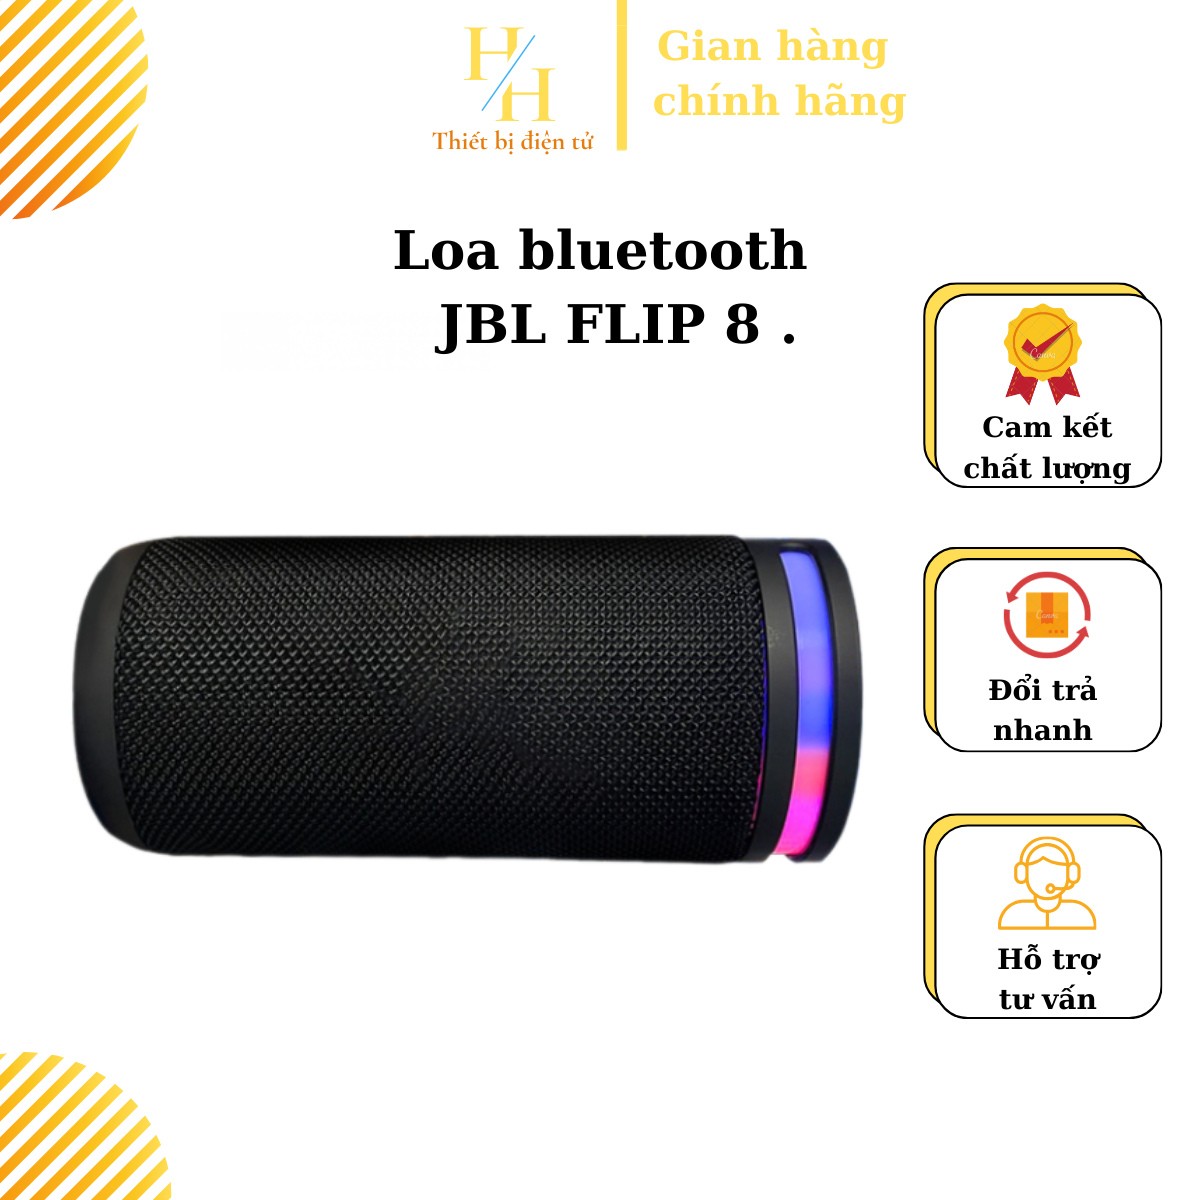 Loa Bluetooth JBL FLIP 8 Loa Di Động JBL Thiết Kế Nhỏ Gọn Thuận Kiện khi Đi Du Lịch Dã Ngoại  Âm Bass Cực Đỉnh Âm Thanh Chân Thực Chống Nước IPX7